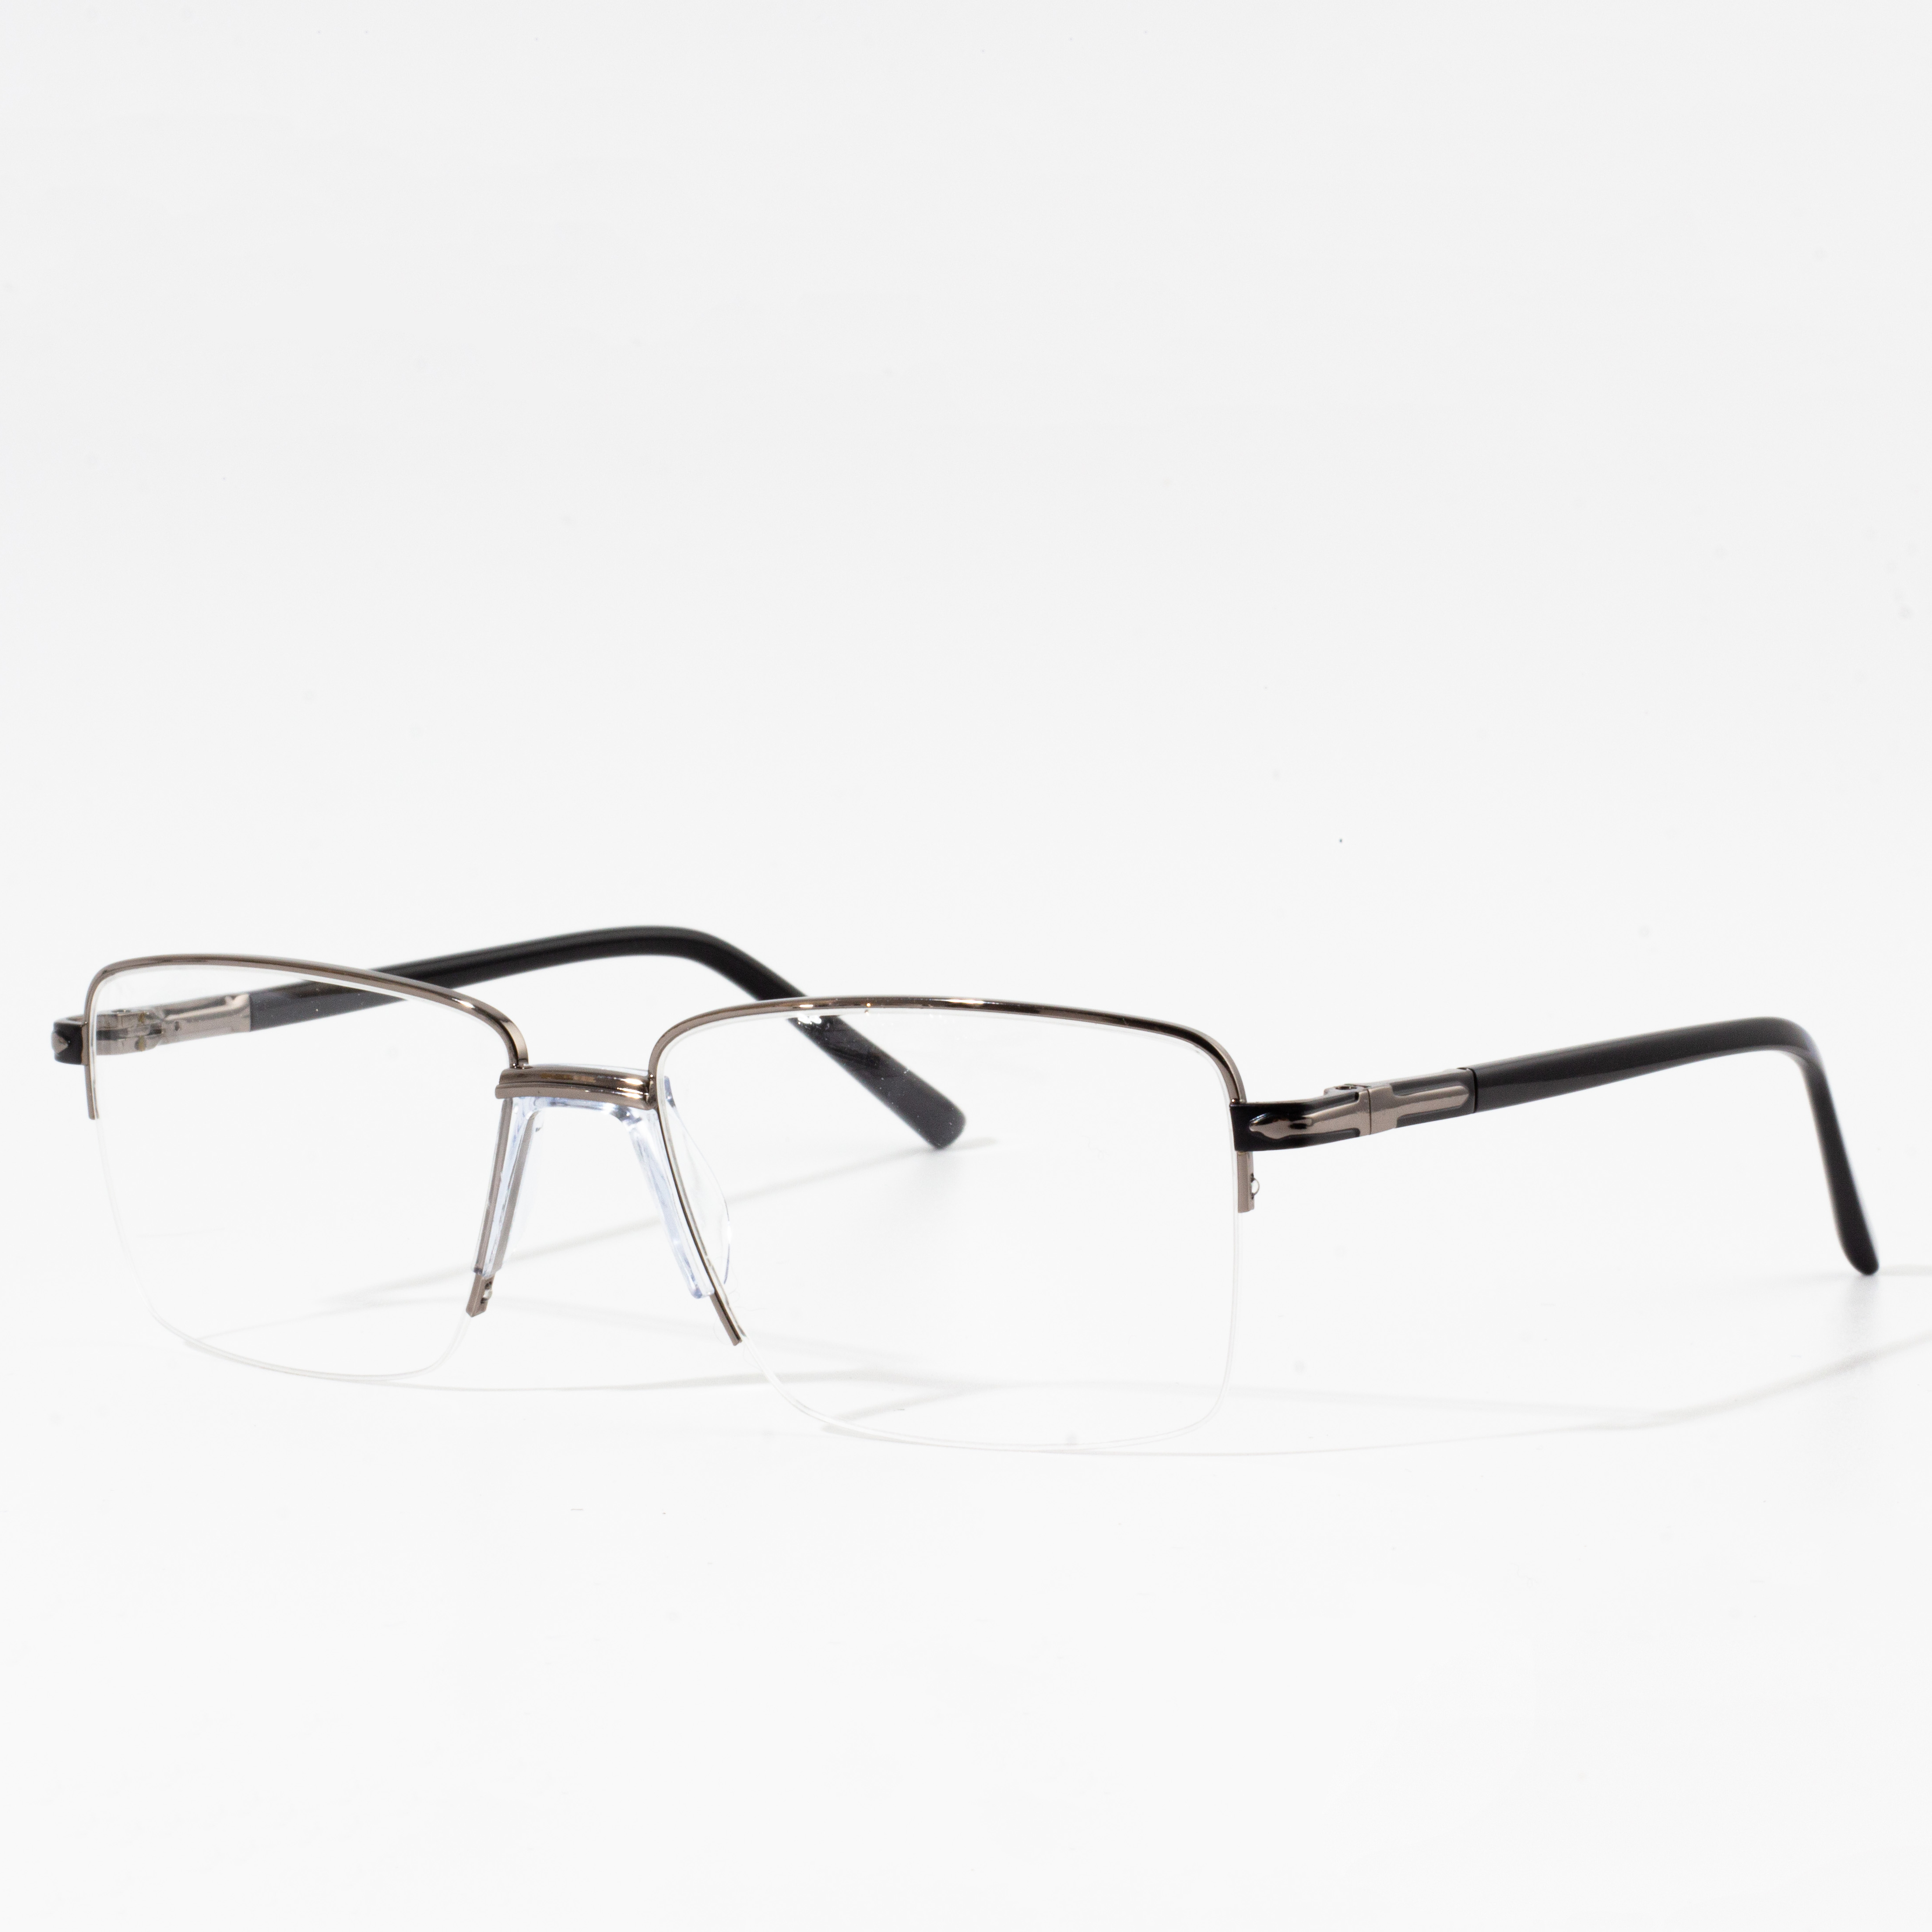 square eyeglass frames